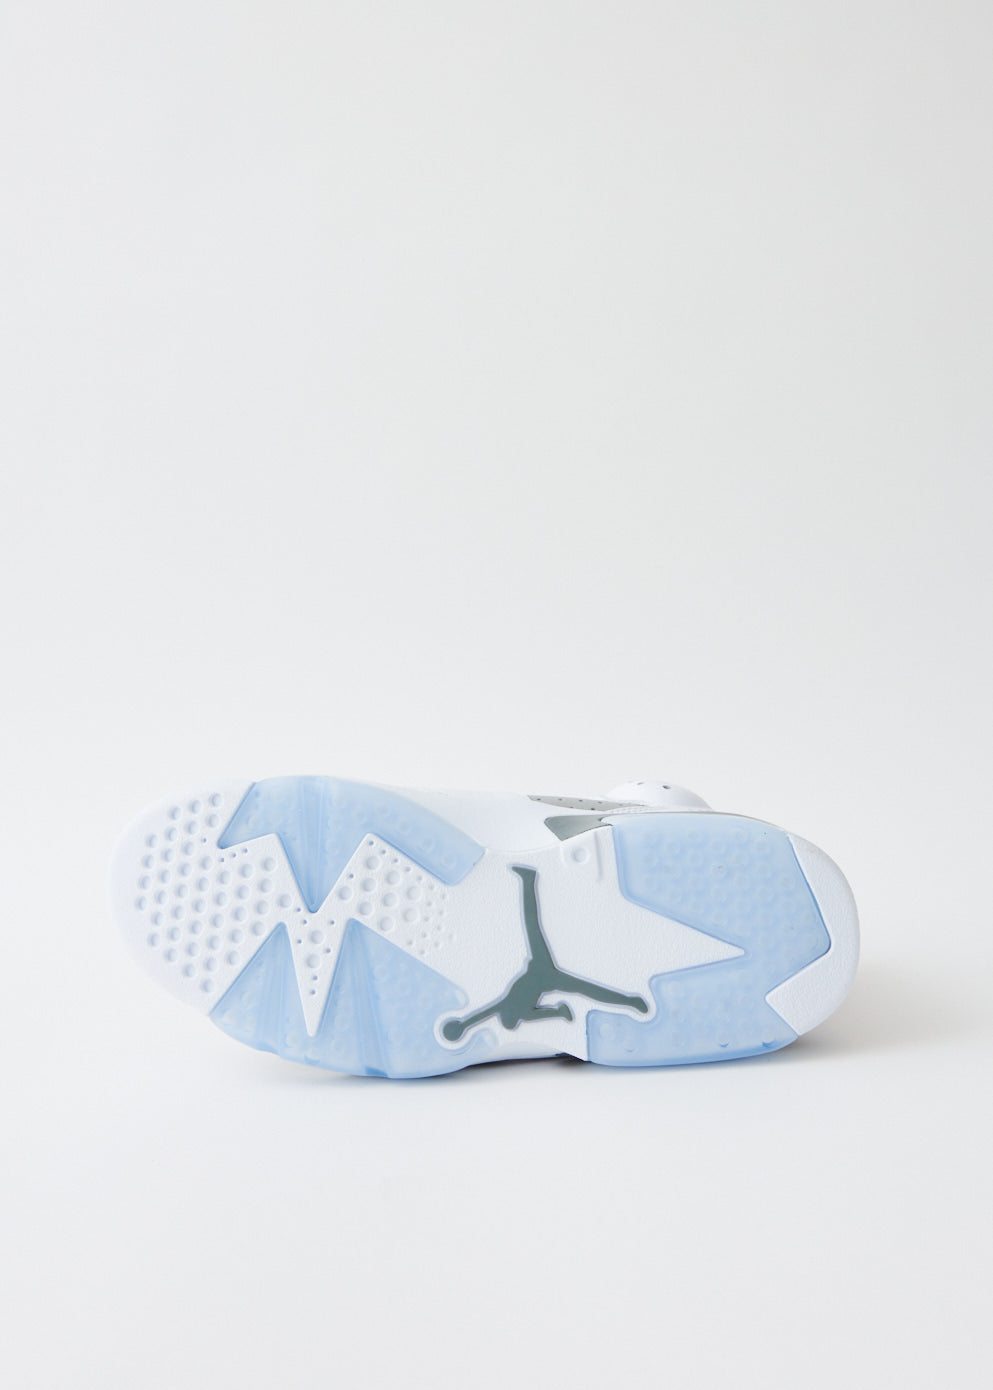 Air Jordan 6 Retro 'Cool Grey' Sneakers